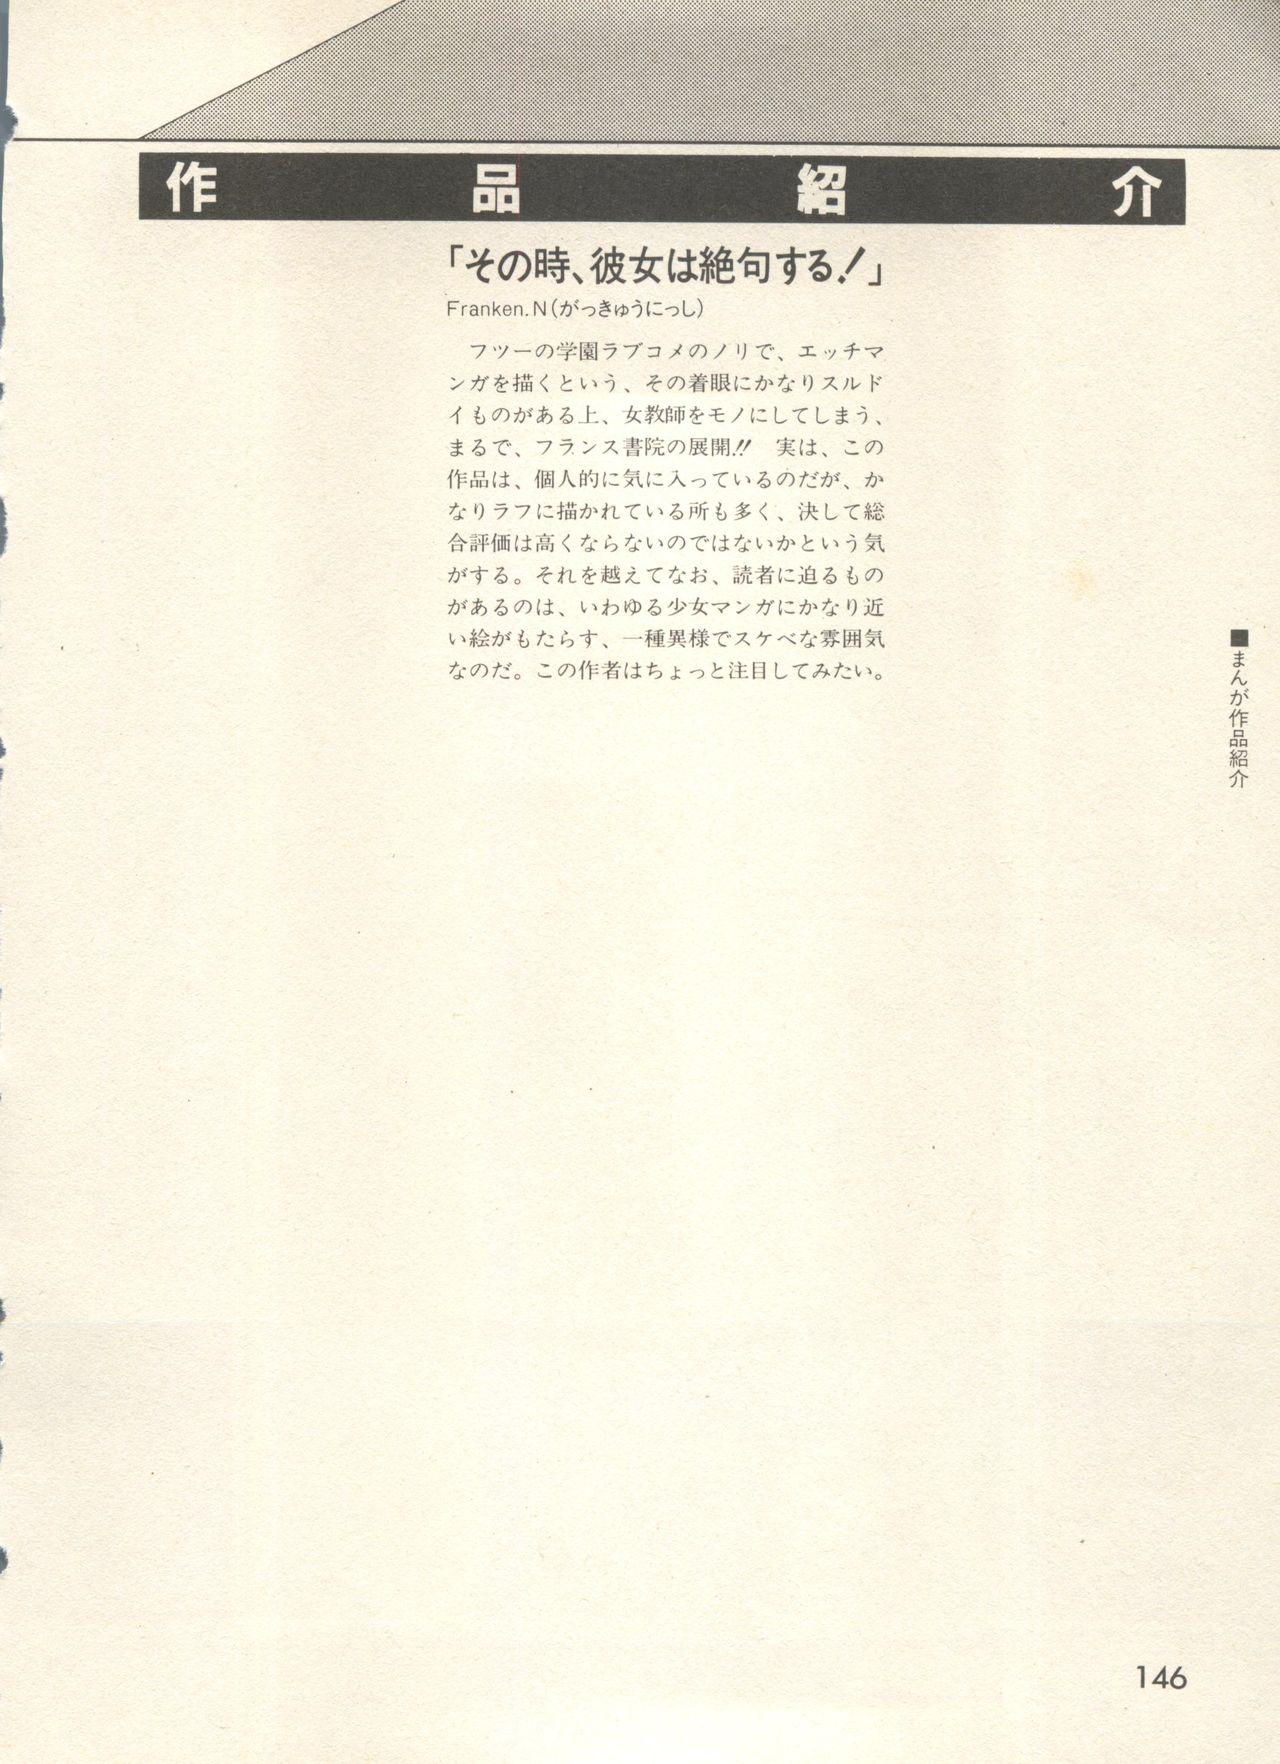 Bishoujo Shoukougun - Lolita Syndrome 7 148